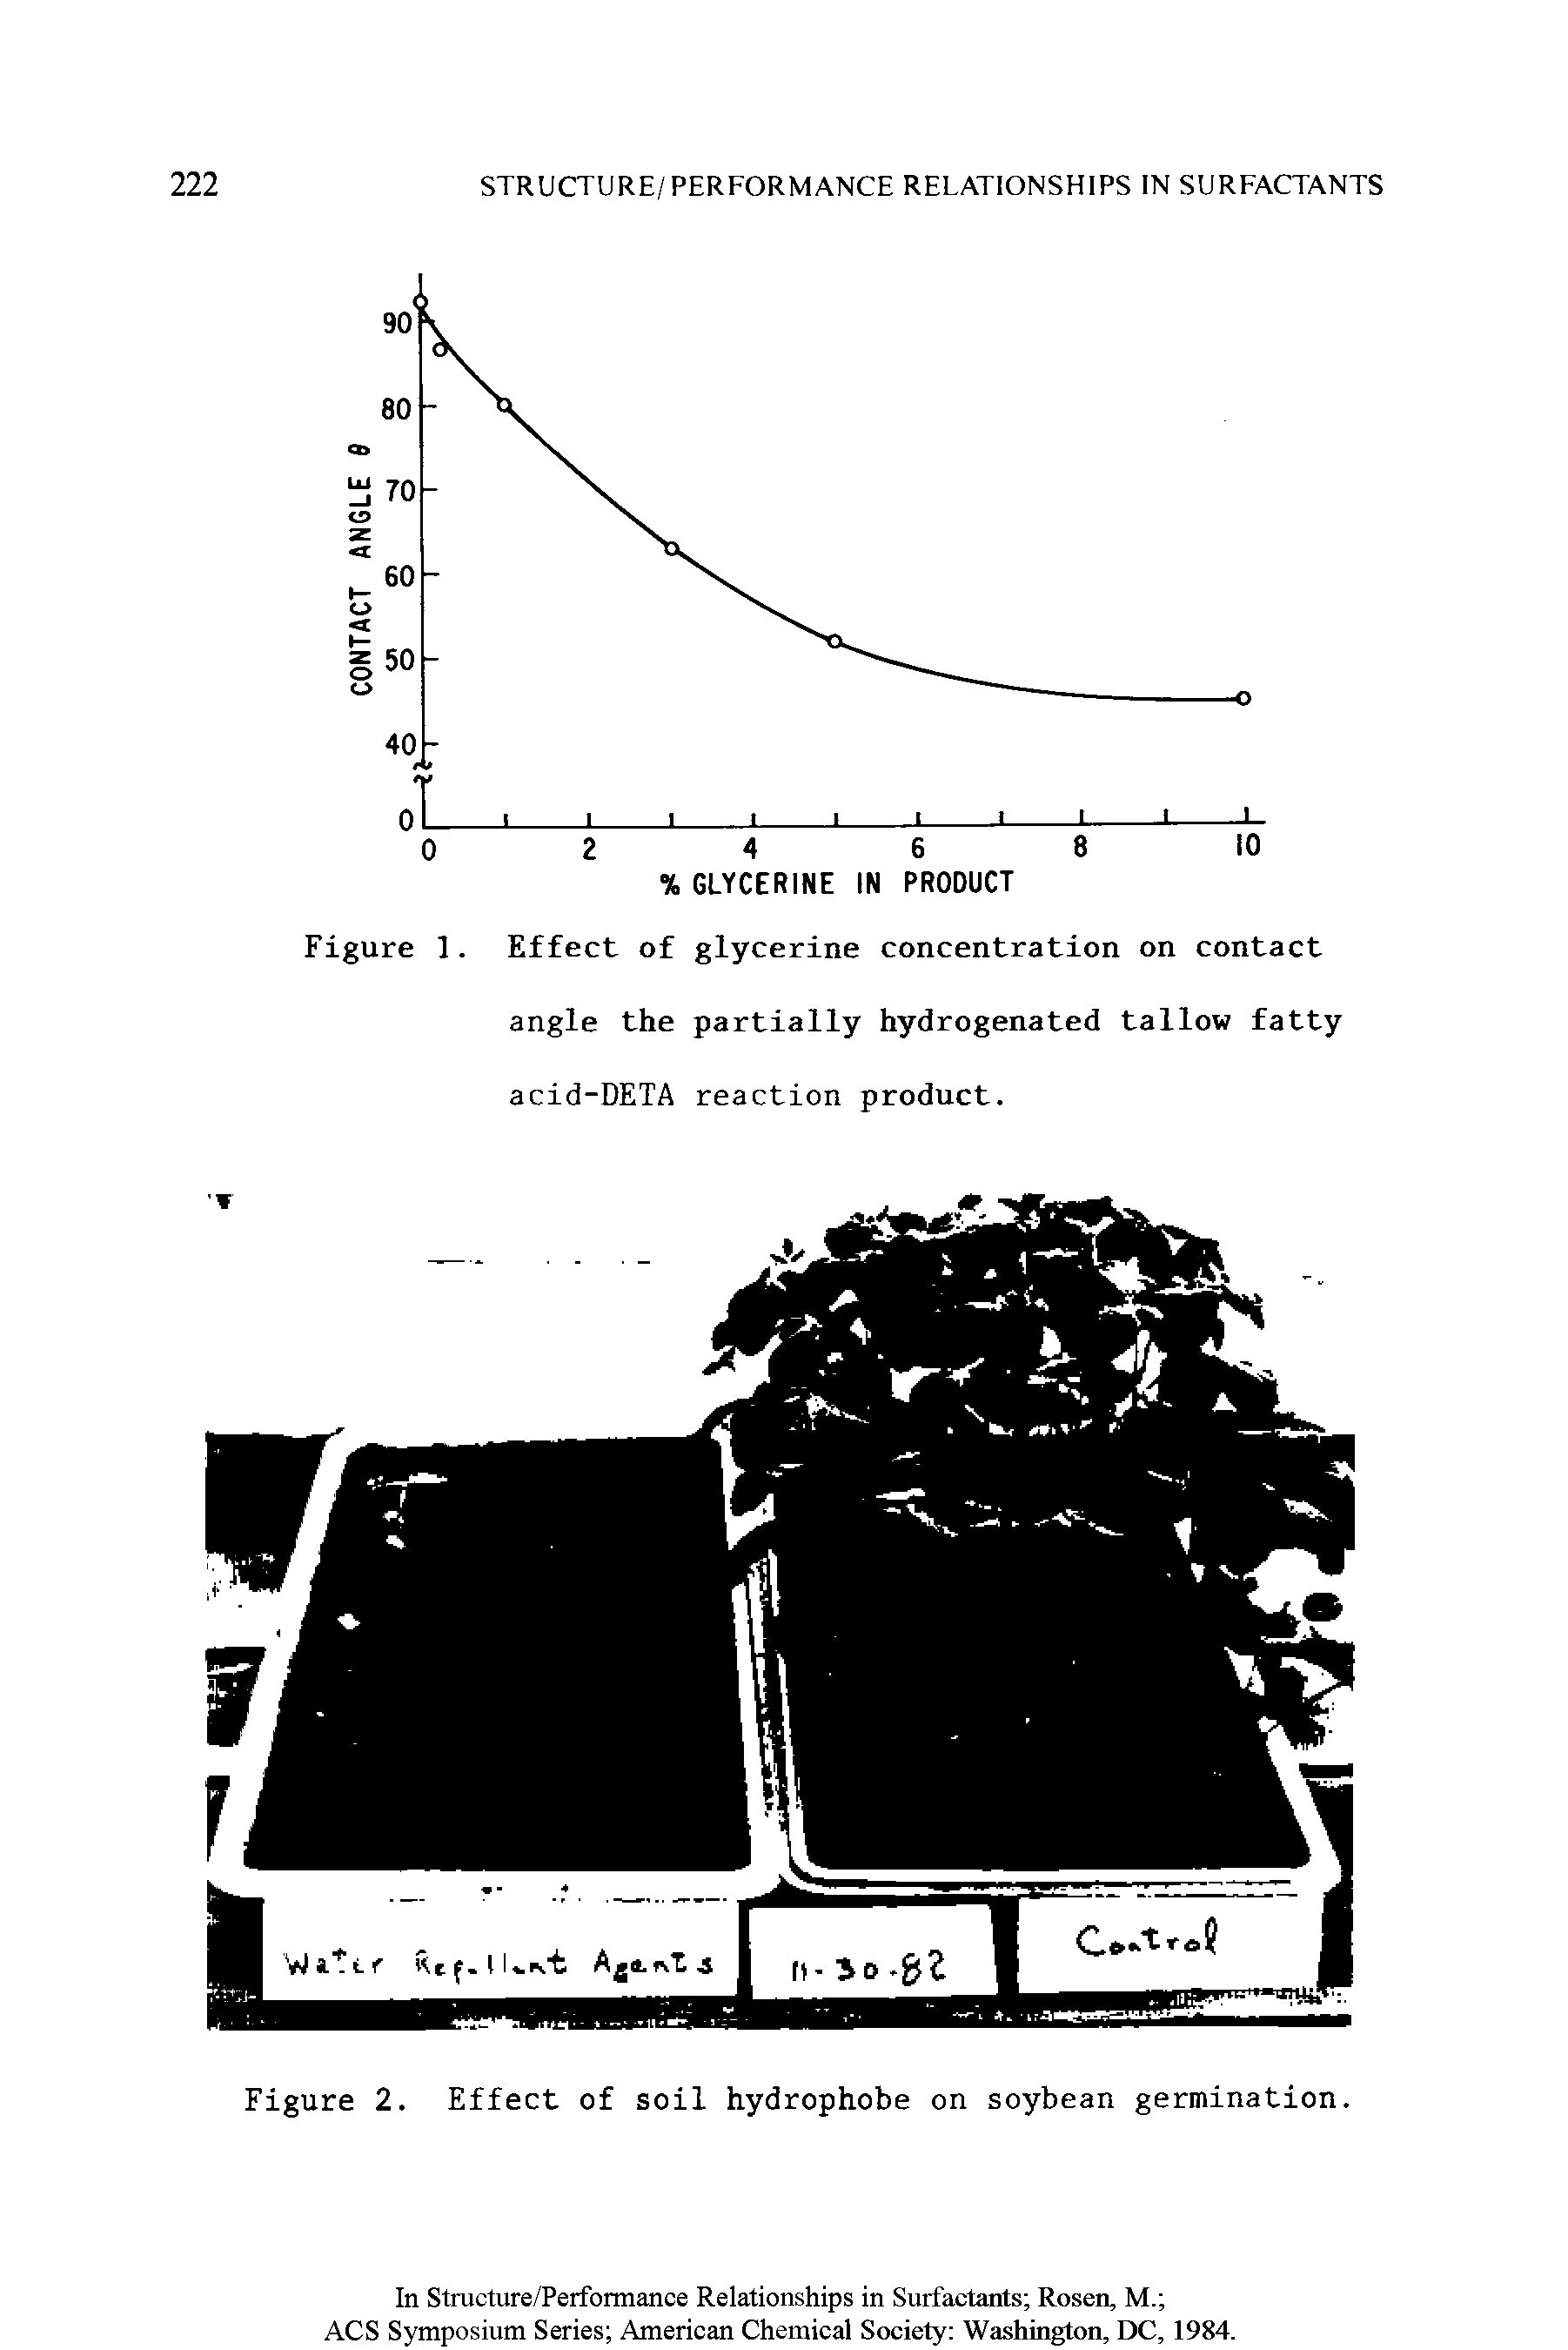 Figure 2. Effect of soil hydrophobe on soybean germination.